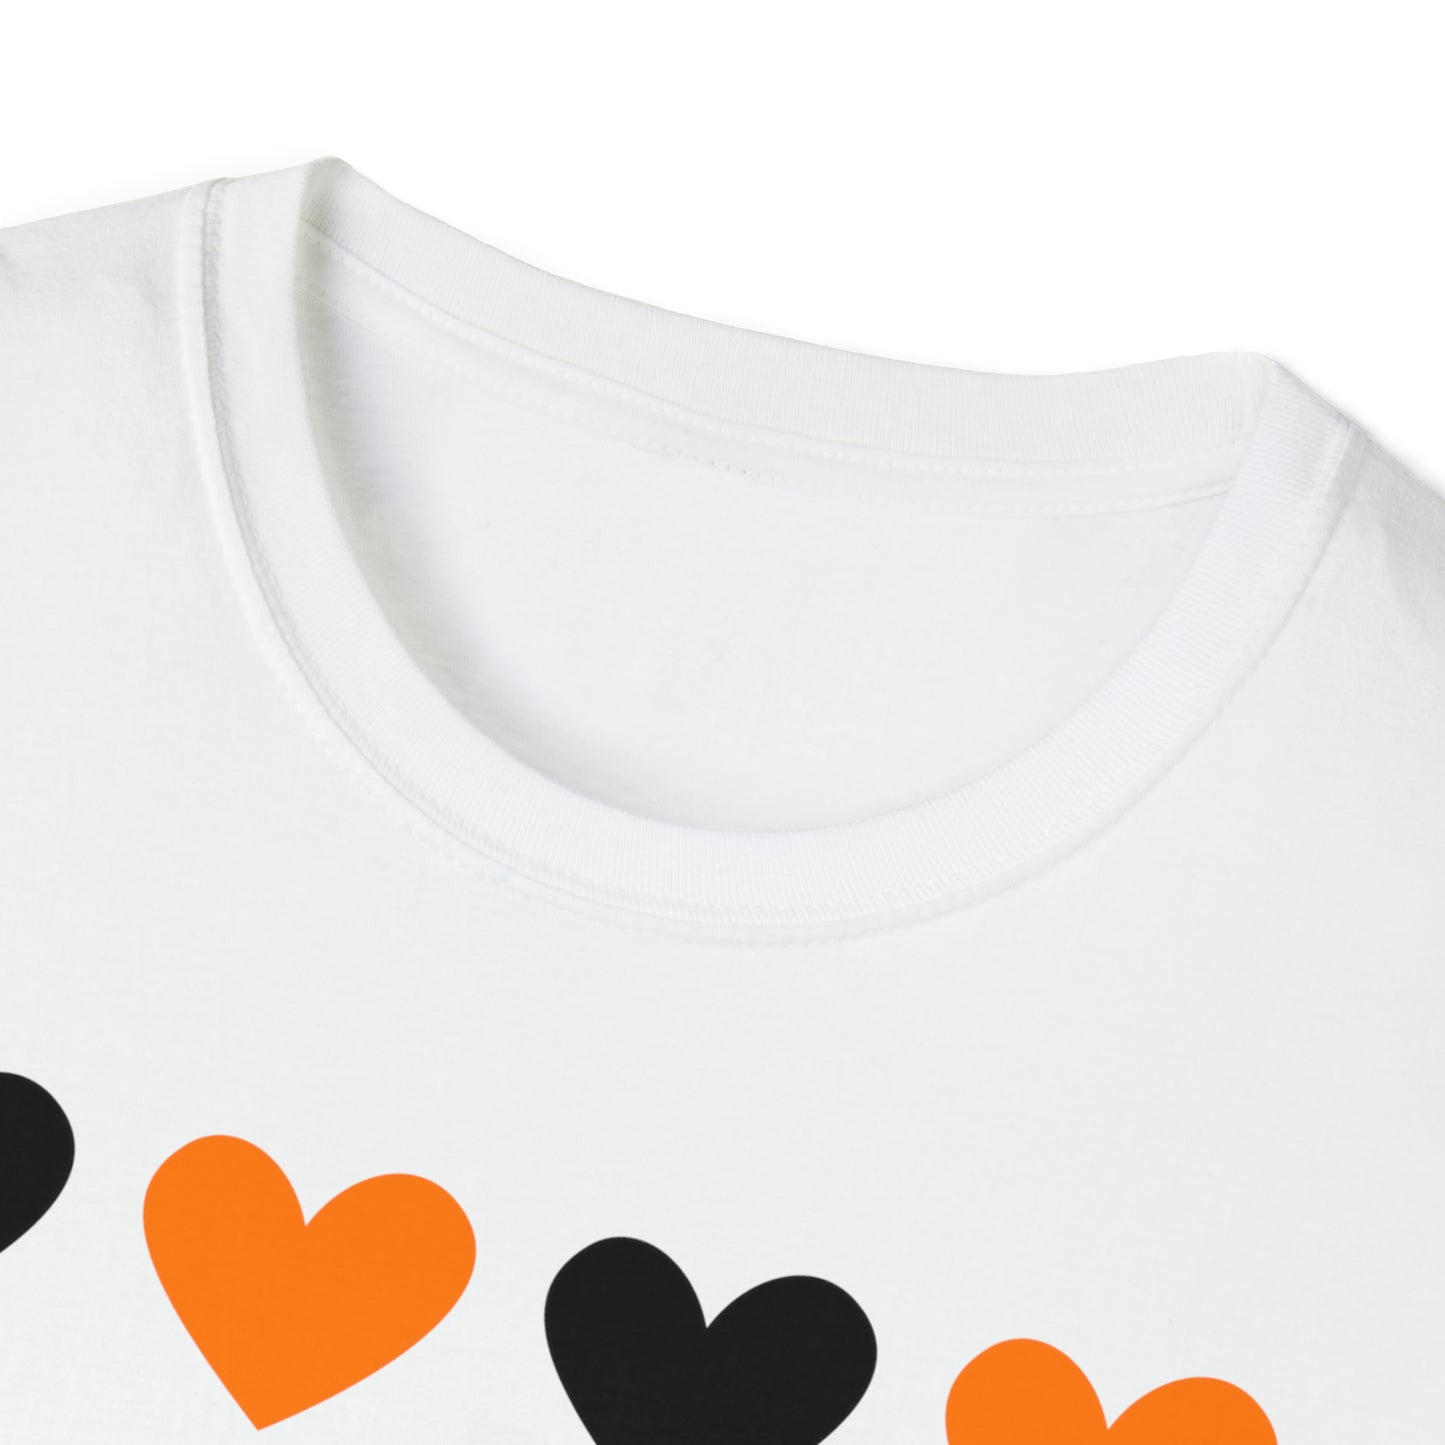 I HEART Verona Wildcats - Adult T-Shirt